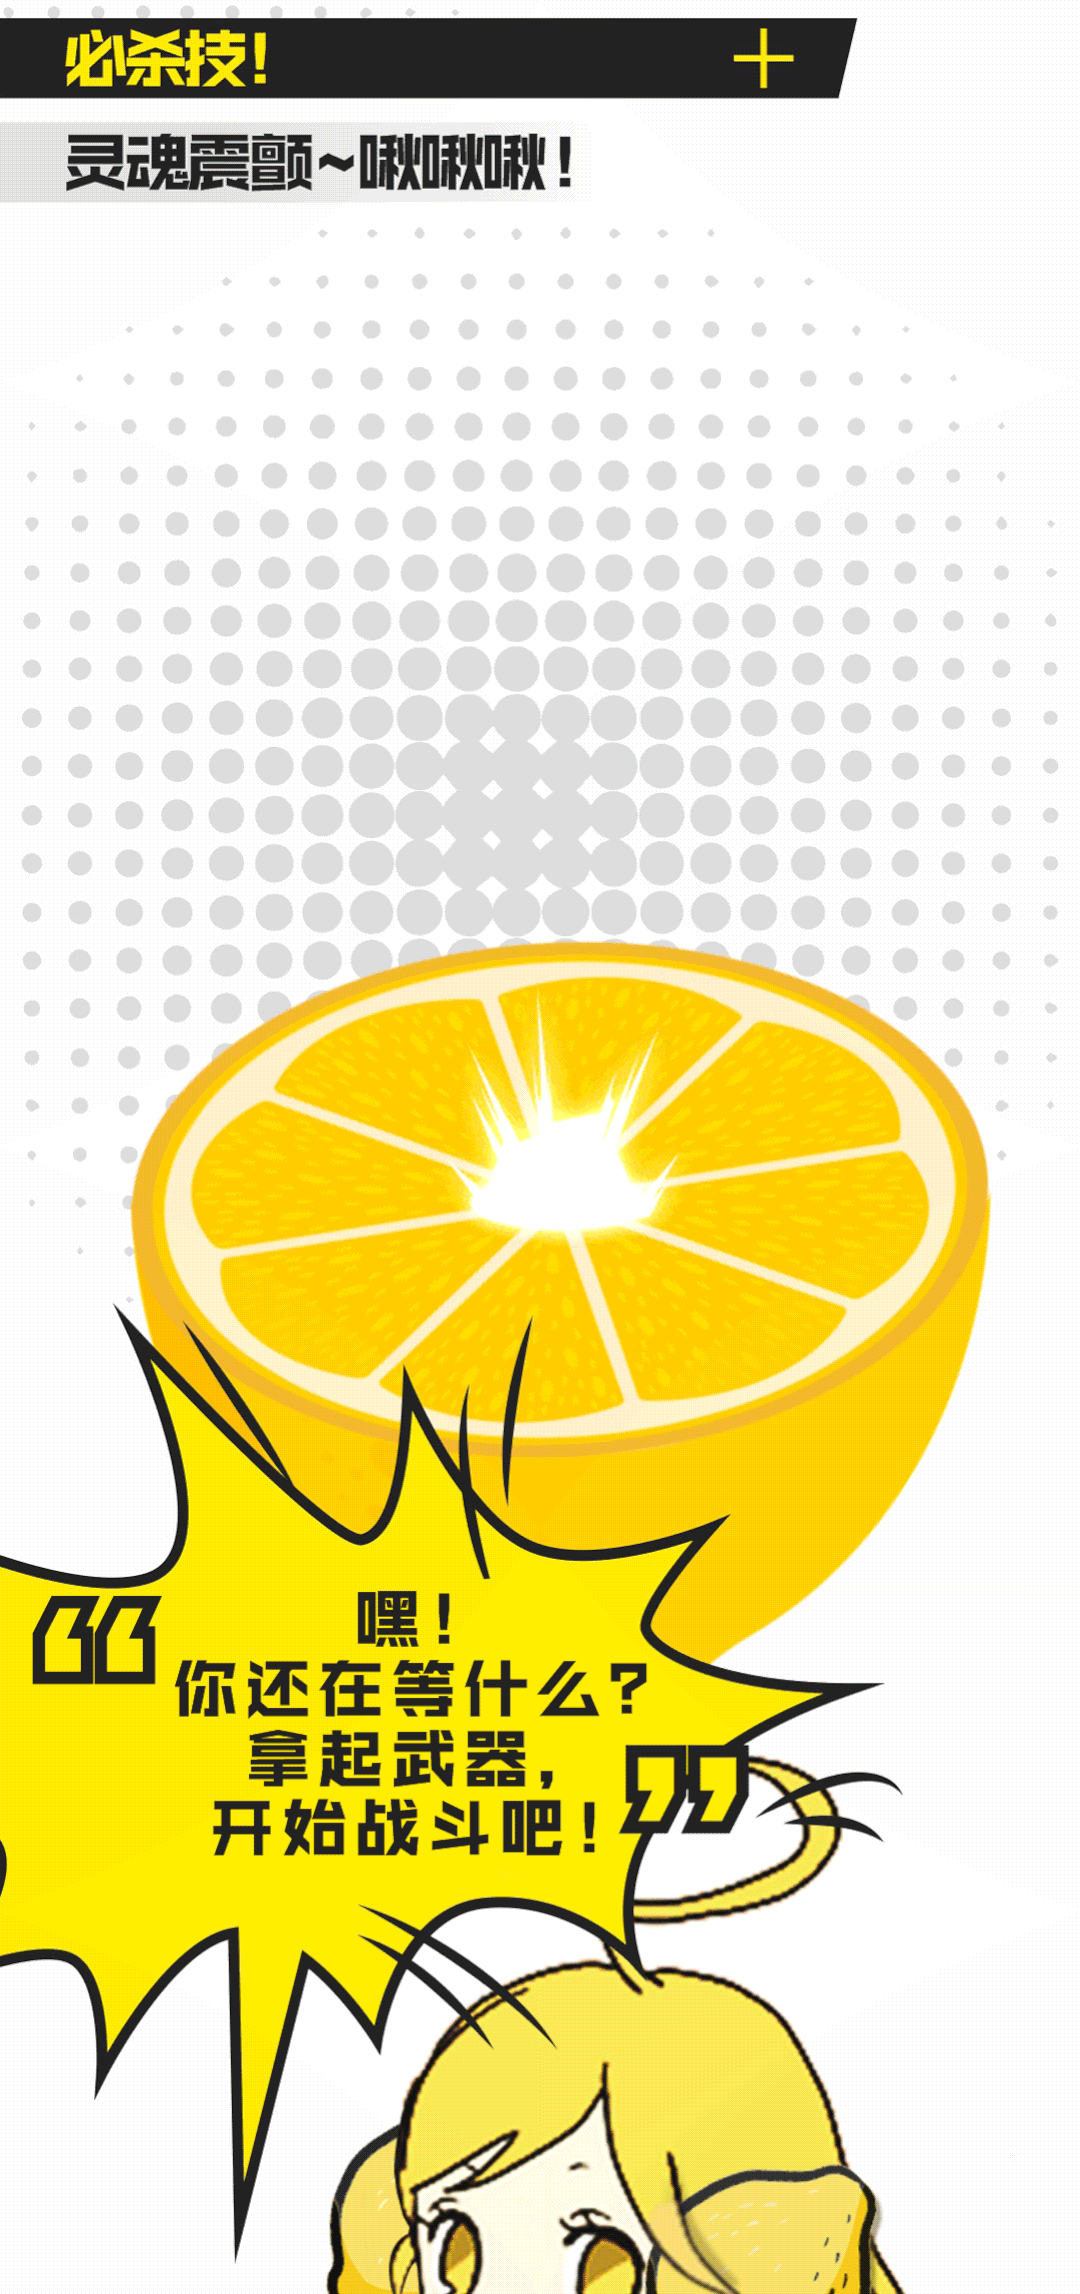 YOOZ柚子 | 全新口味上线，超级柠檬来袭